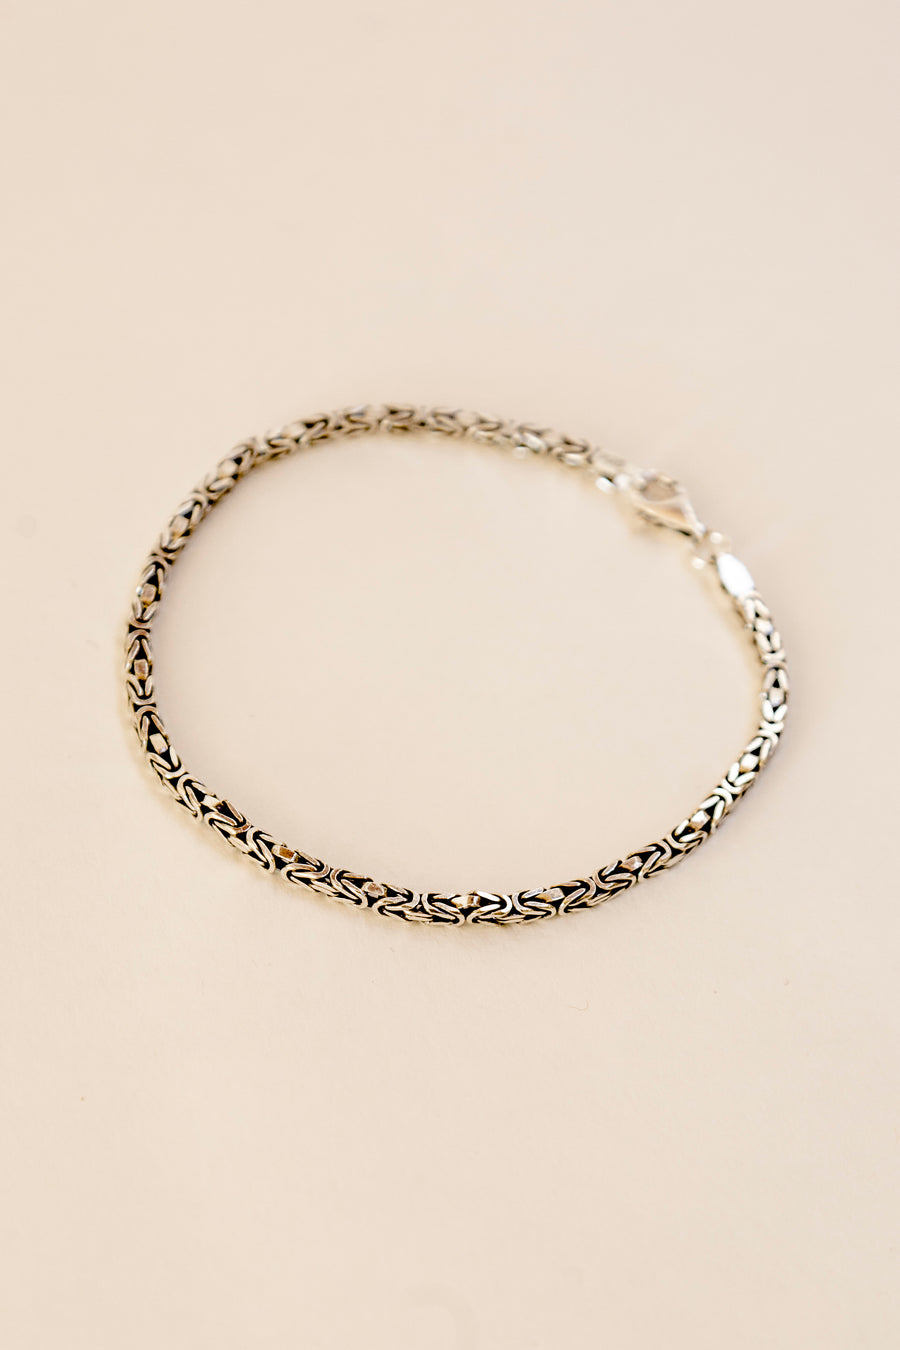 Greek Silver Bracelet